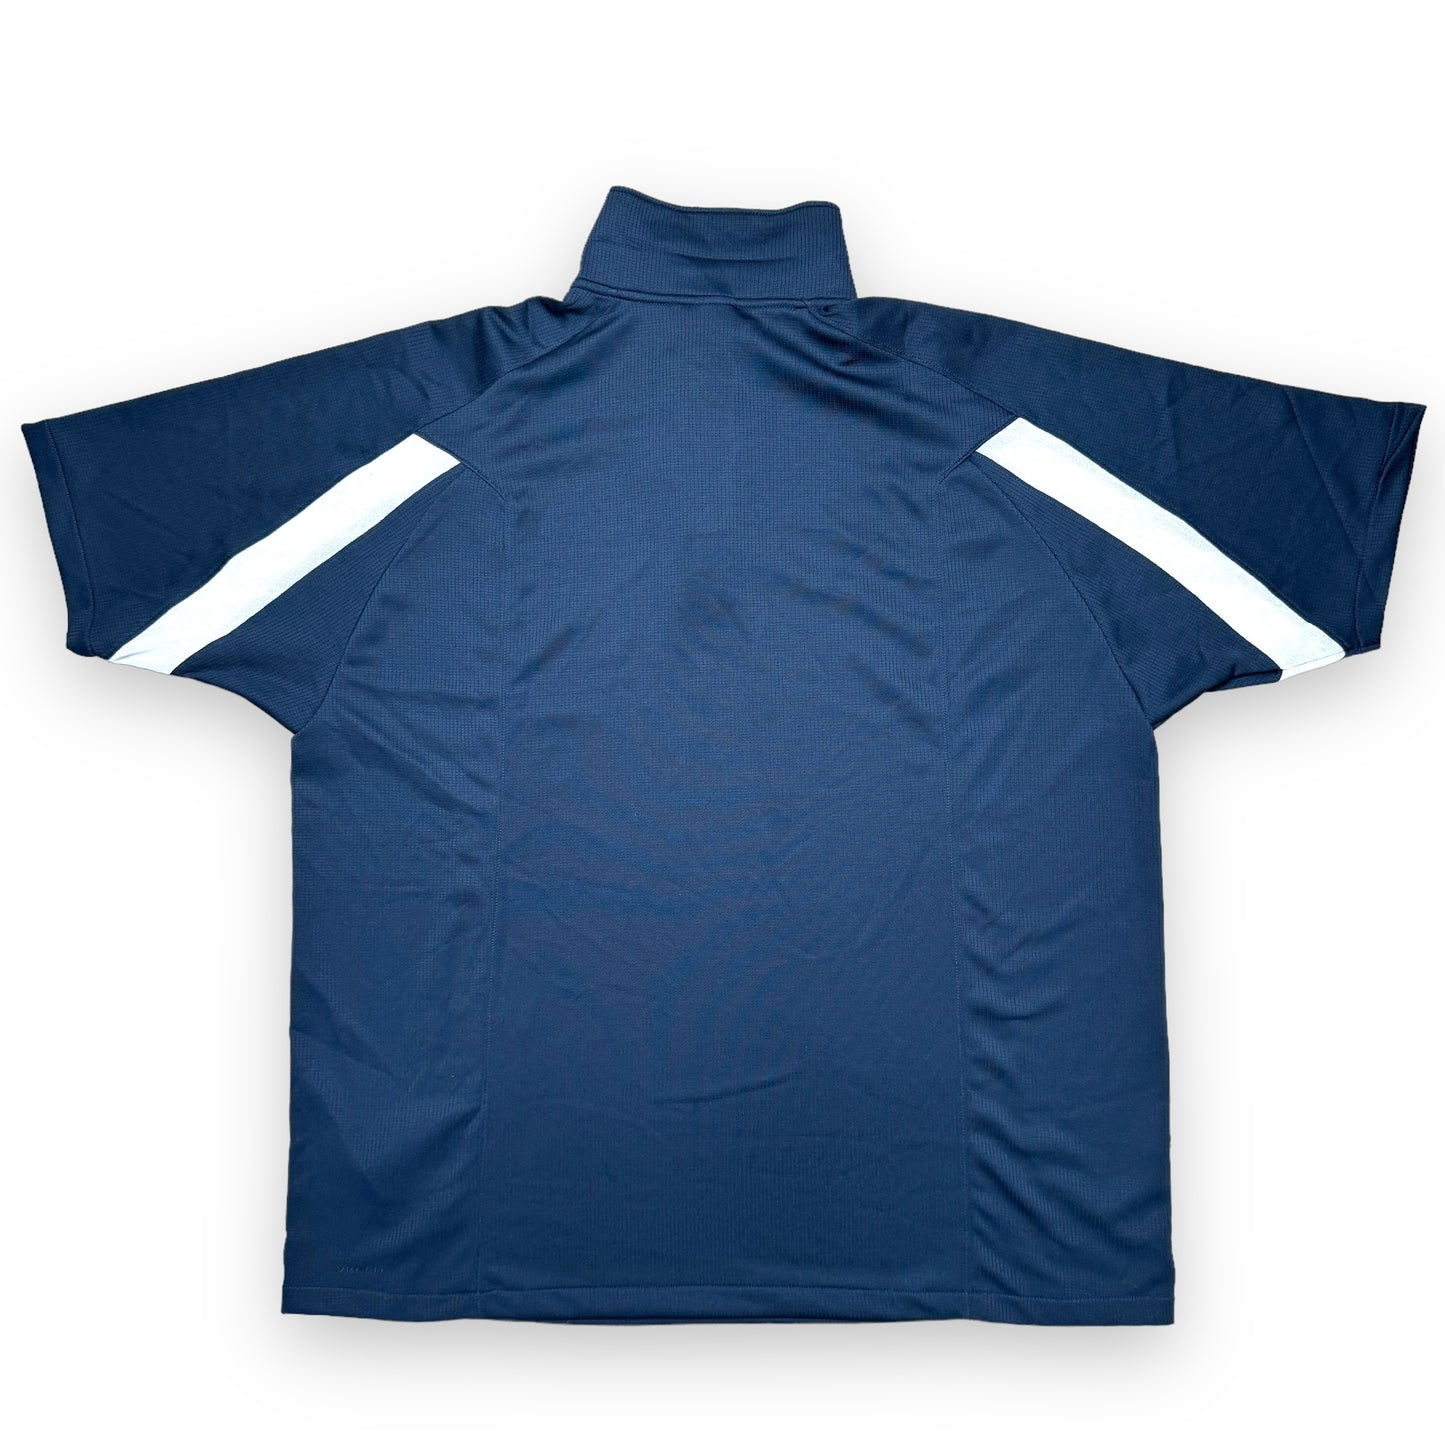 Nike Technical 1/4 Zip T-Shirt